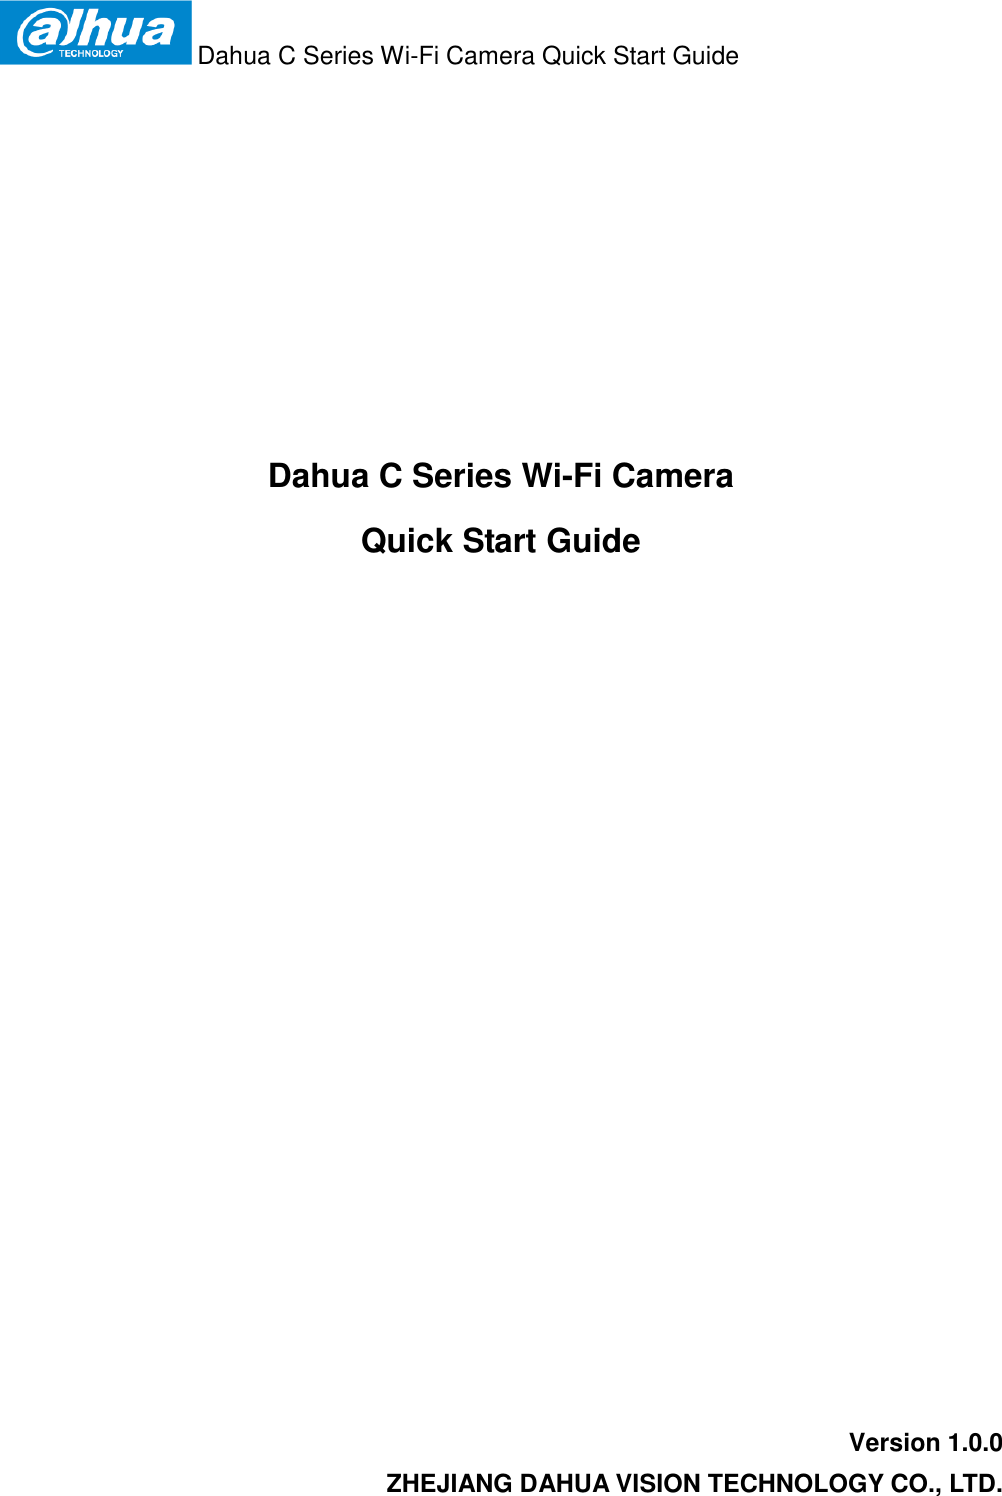  Dahua C Series Wi-Fi Camera Quick Start Guide   Dahua C Series Wi-Fi Camera  Quick Start Guide  Version 1.0.0 ZHEJIANG DAHUA VISION TECHNOLOGY CO., LTD. 